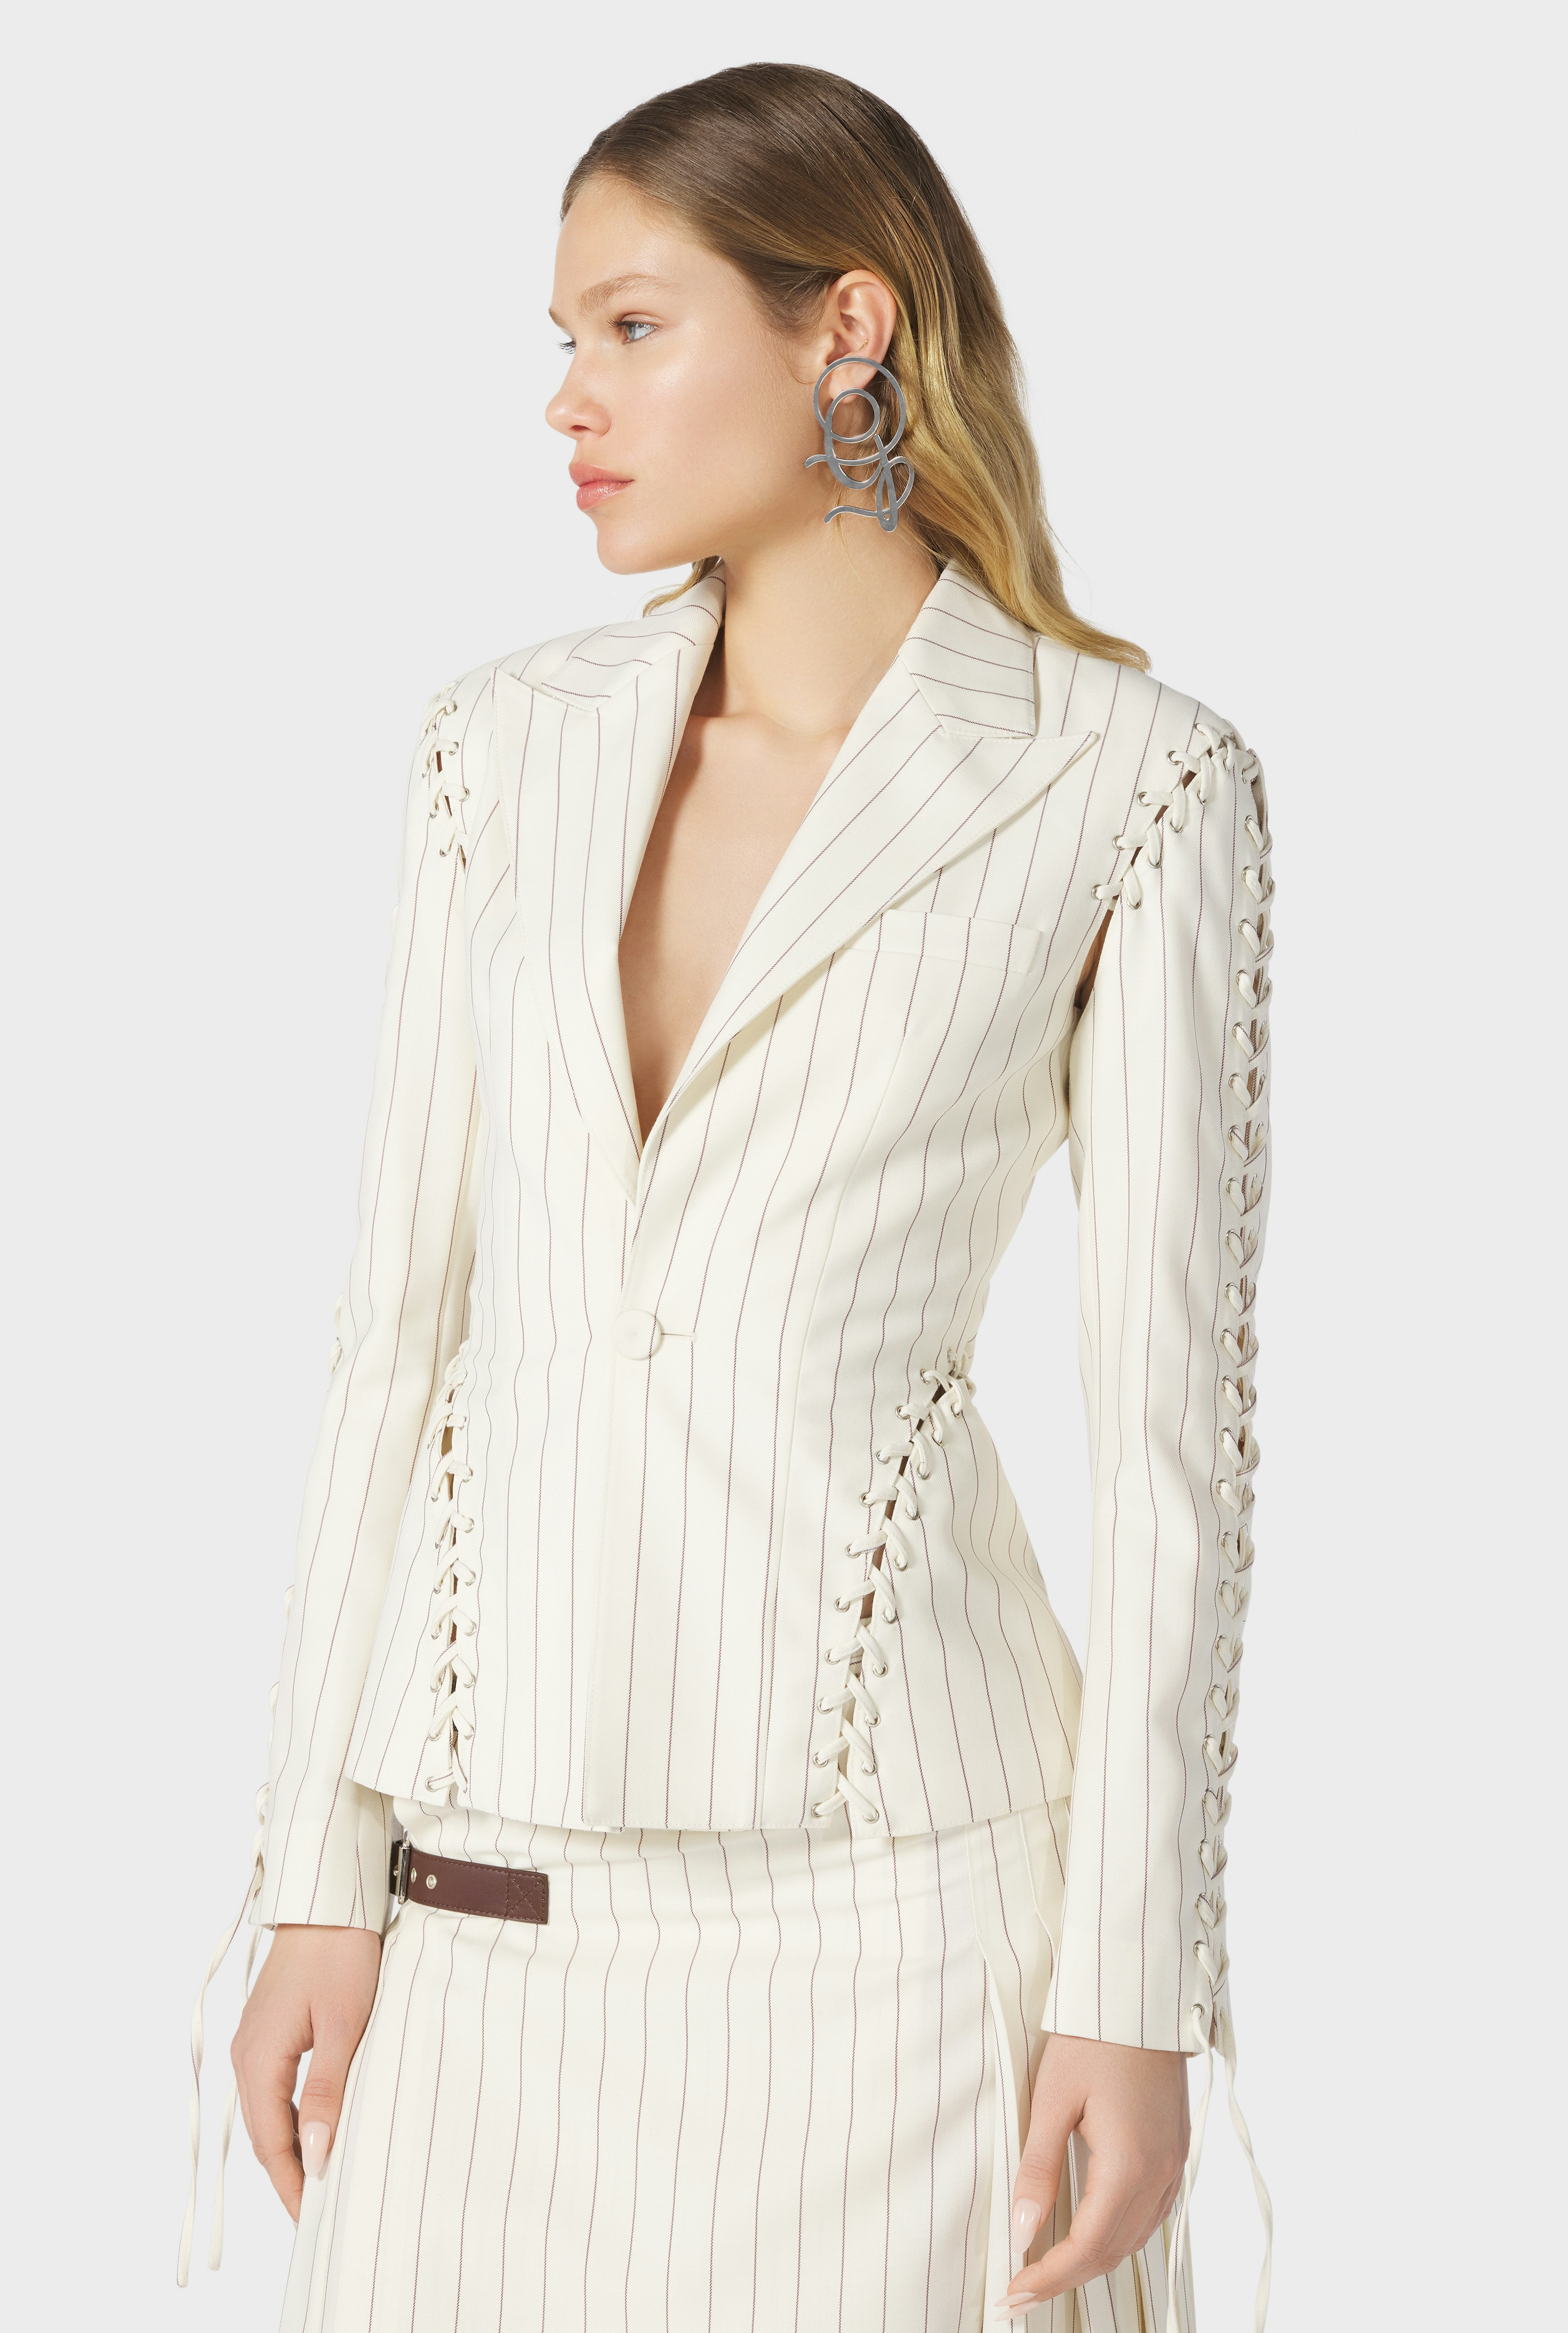 The Lace-Up Suit Jacket